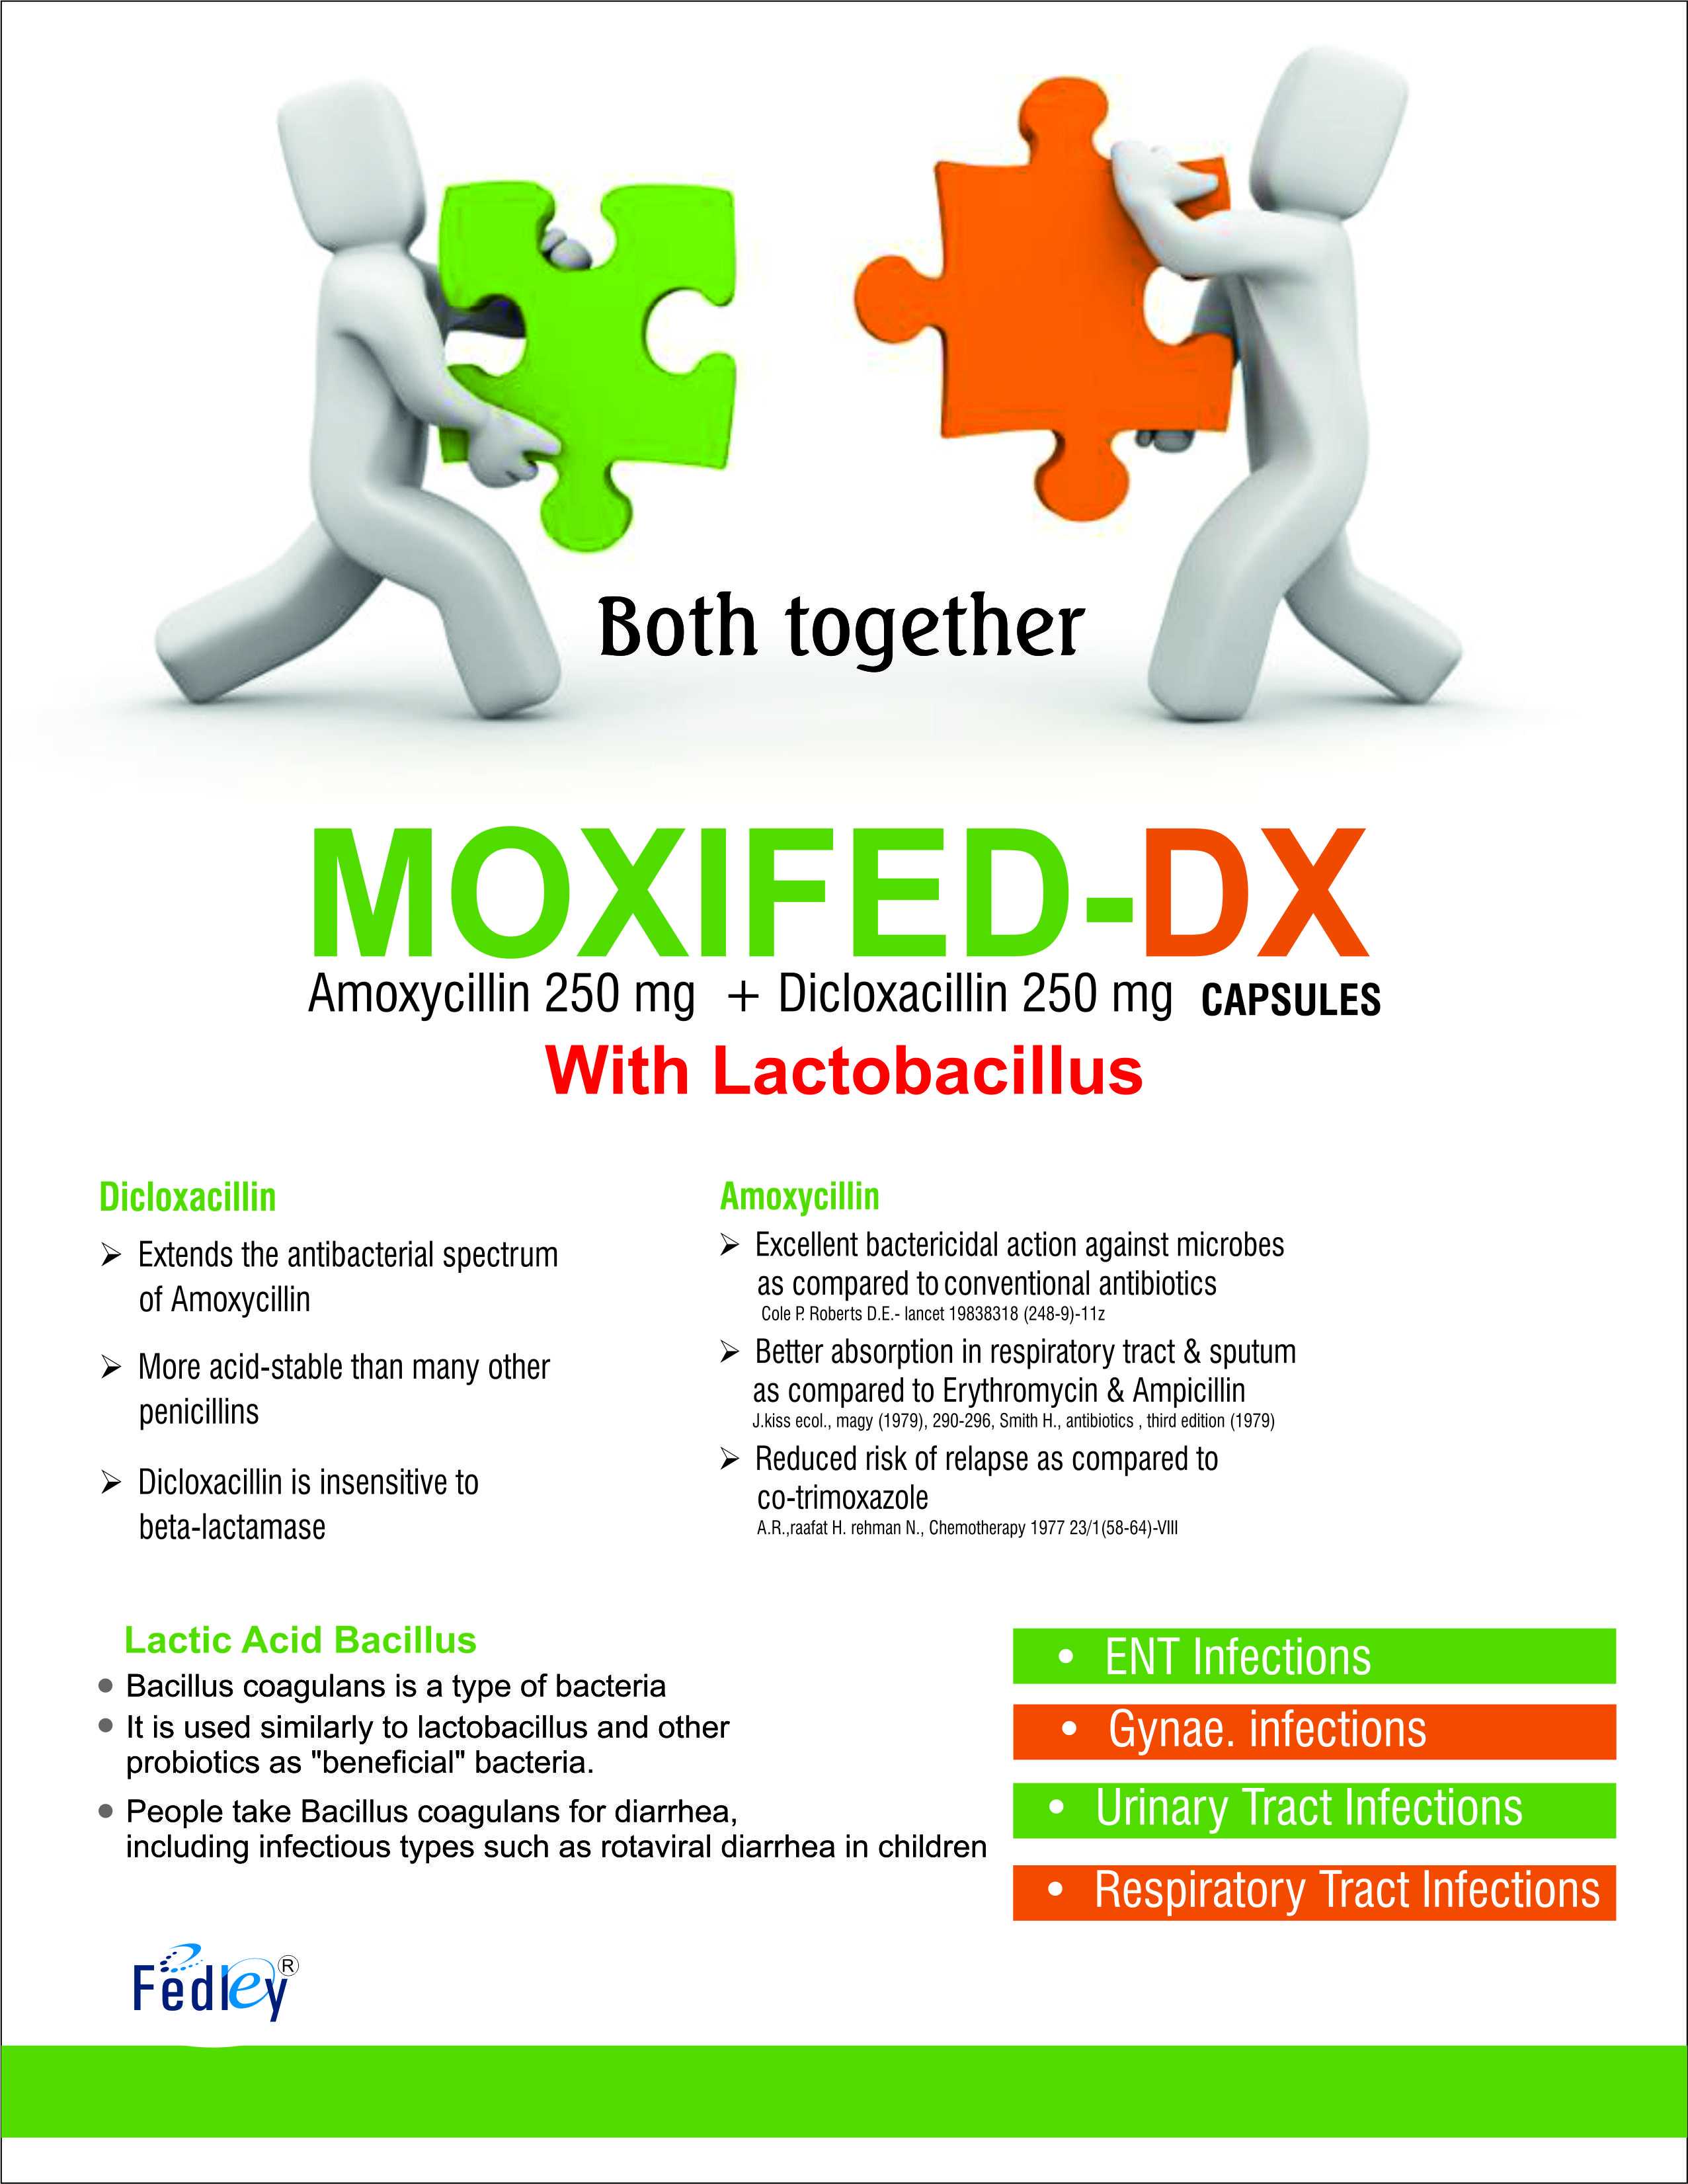 MOXIFED-DX